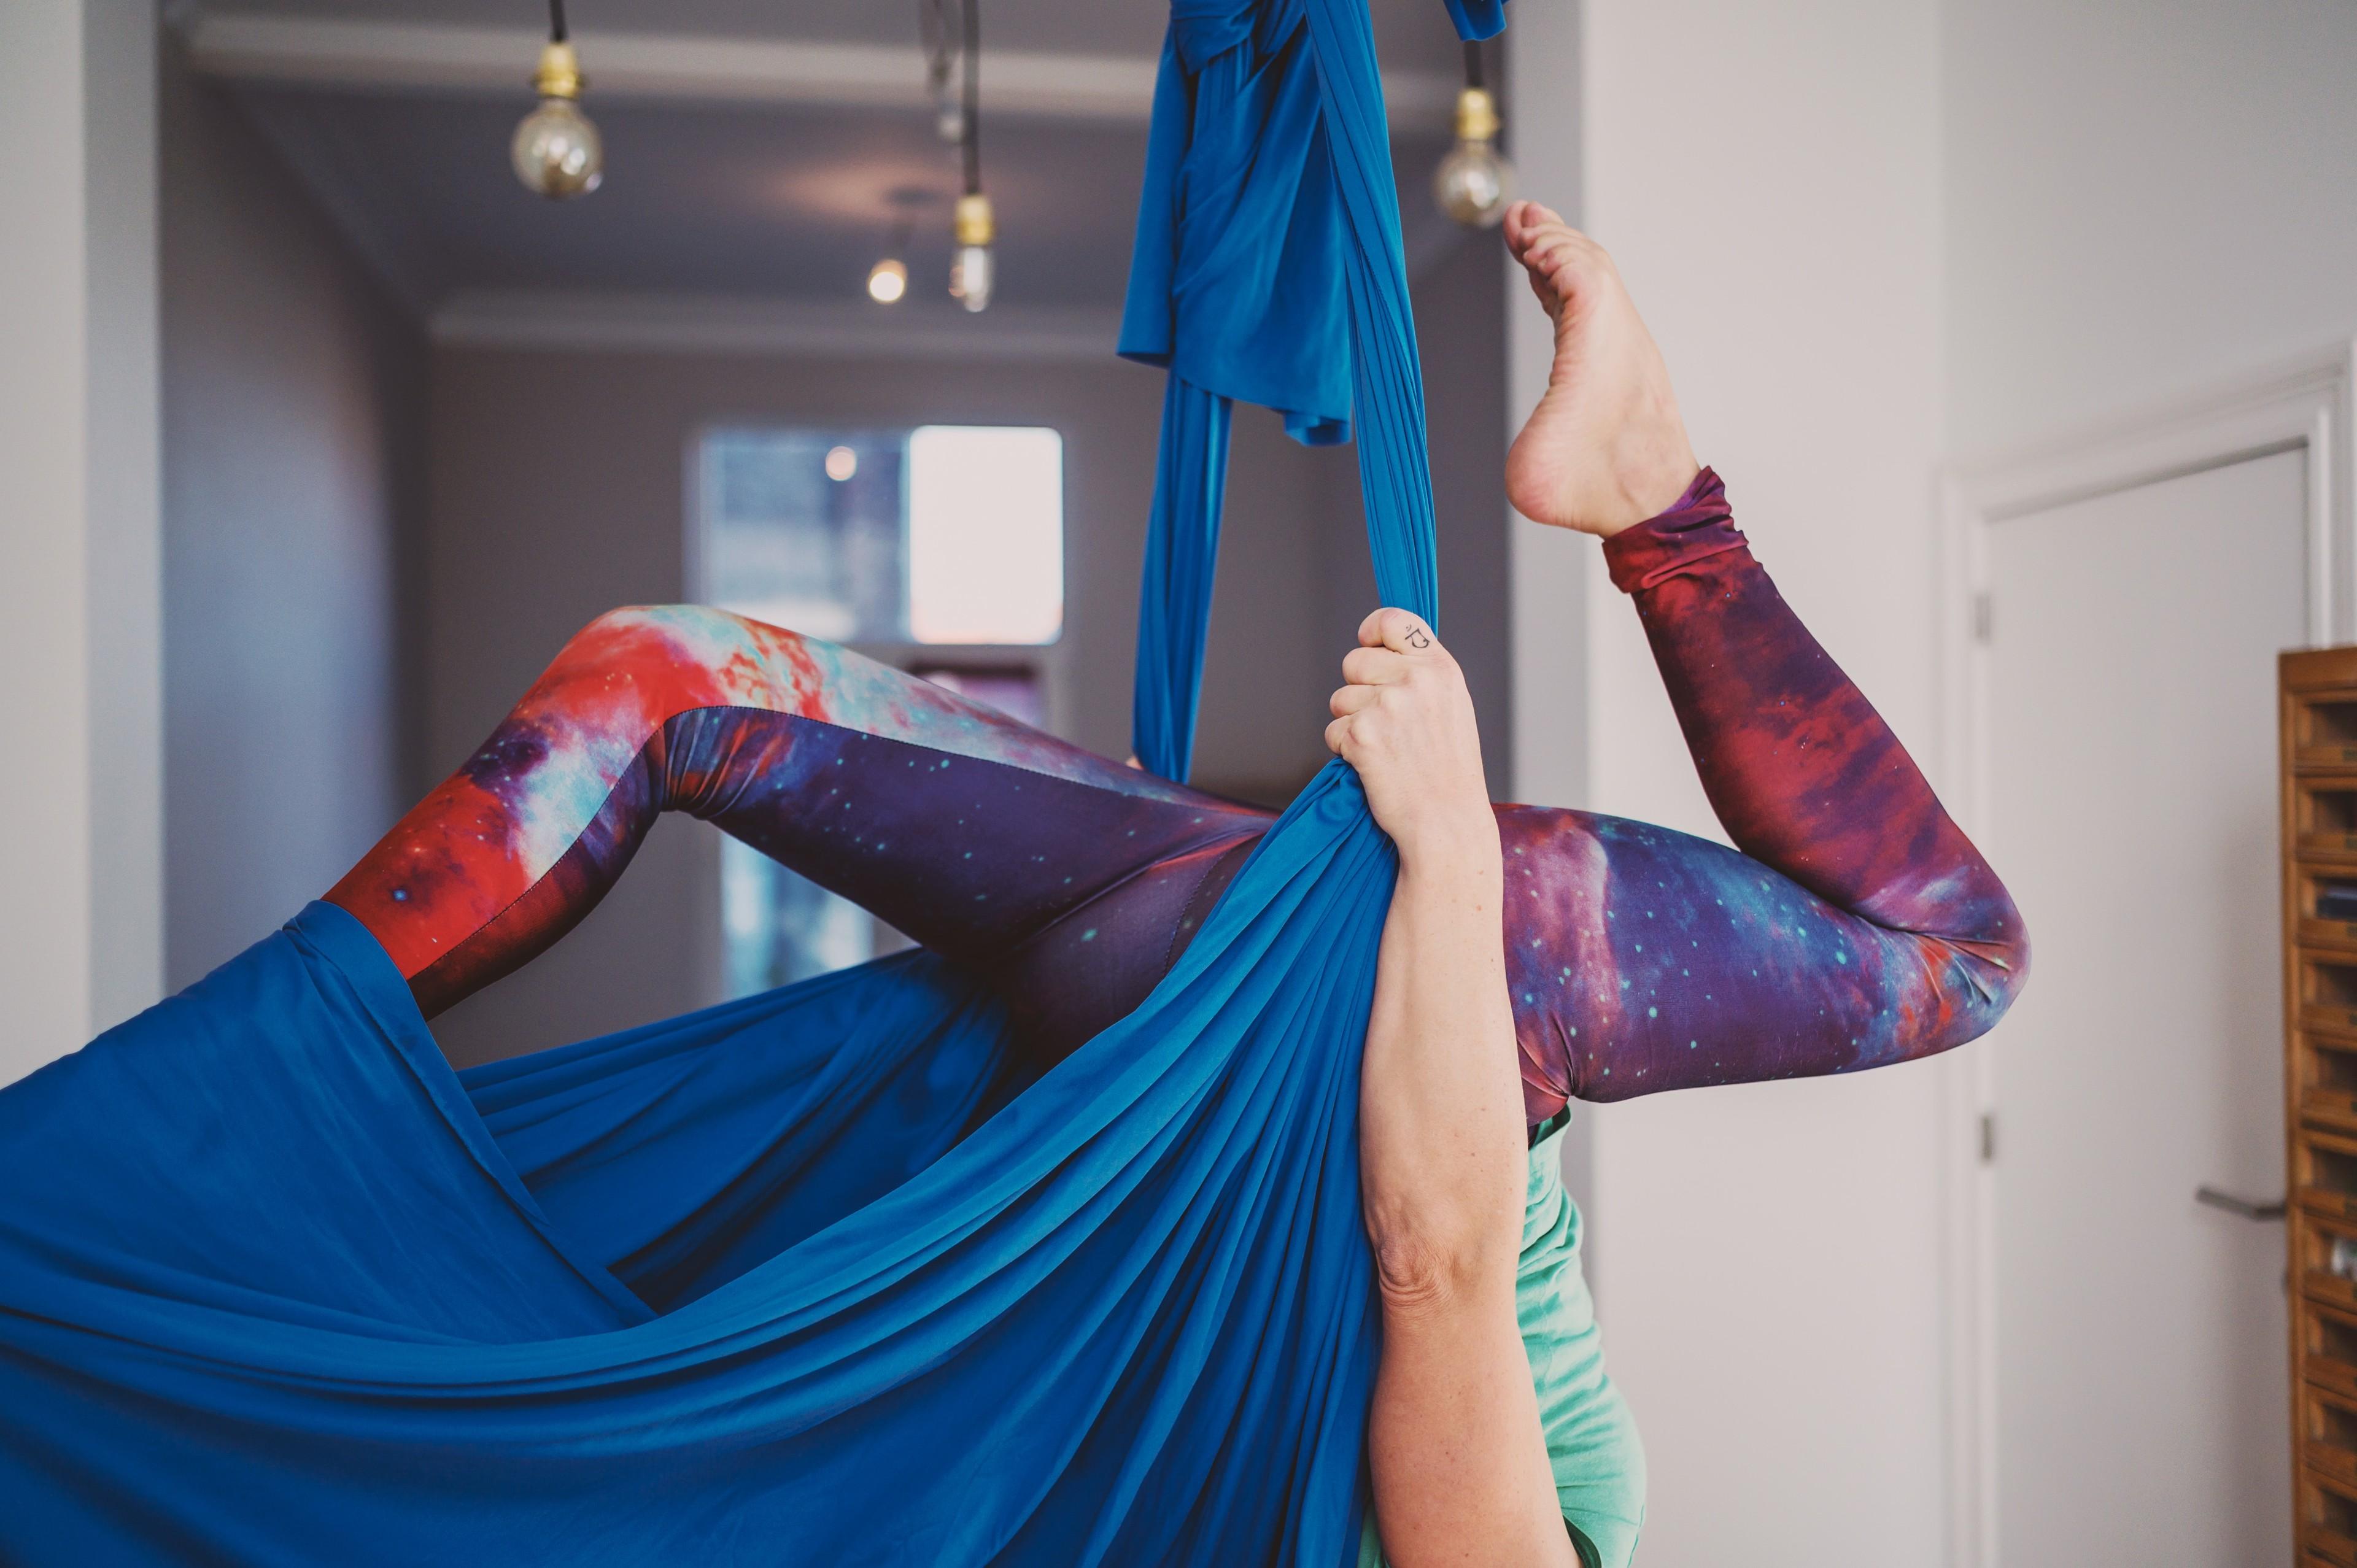 Eine Frau hängt kopfüber in einem blauen Aerial-Yoga-Tuch